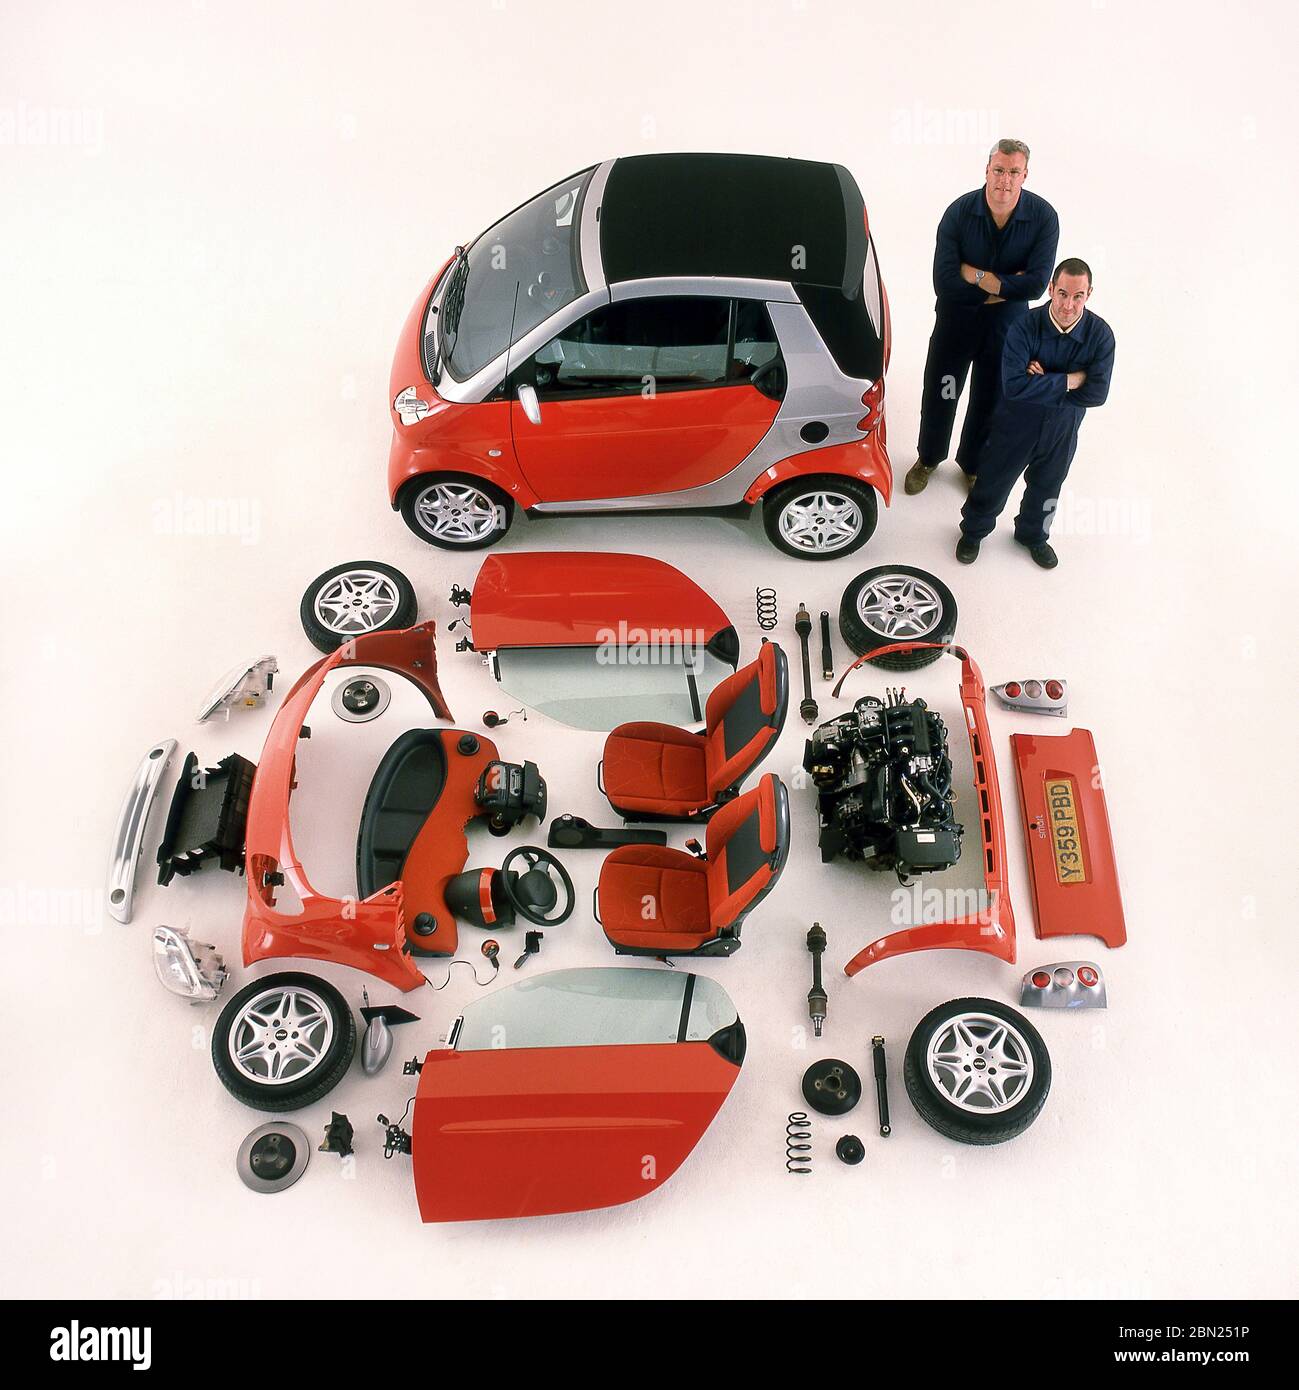 2001 Smart due auto e componenti che compongono la vettura esposti. Foto Stock